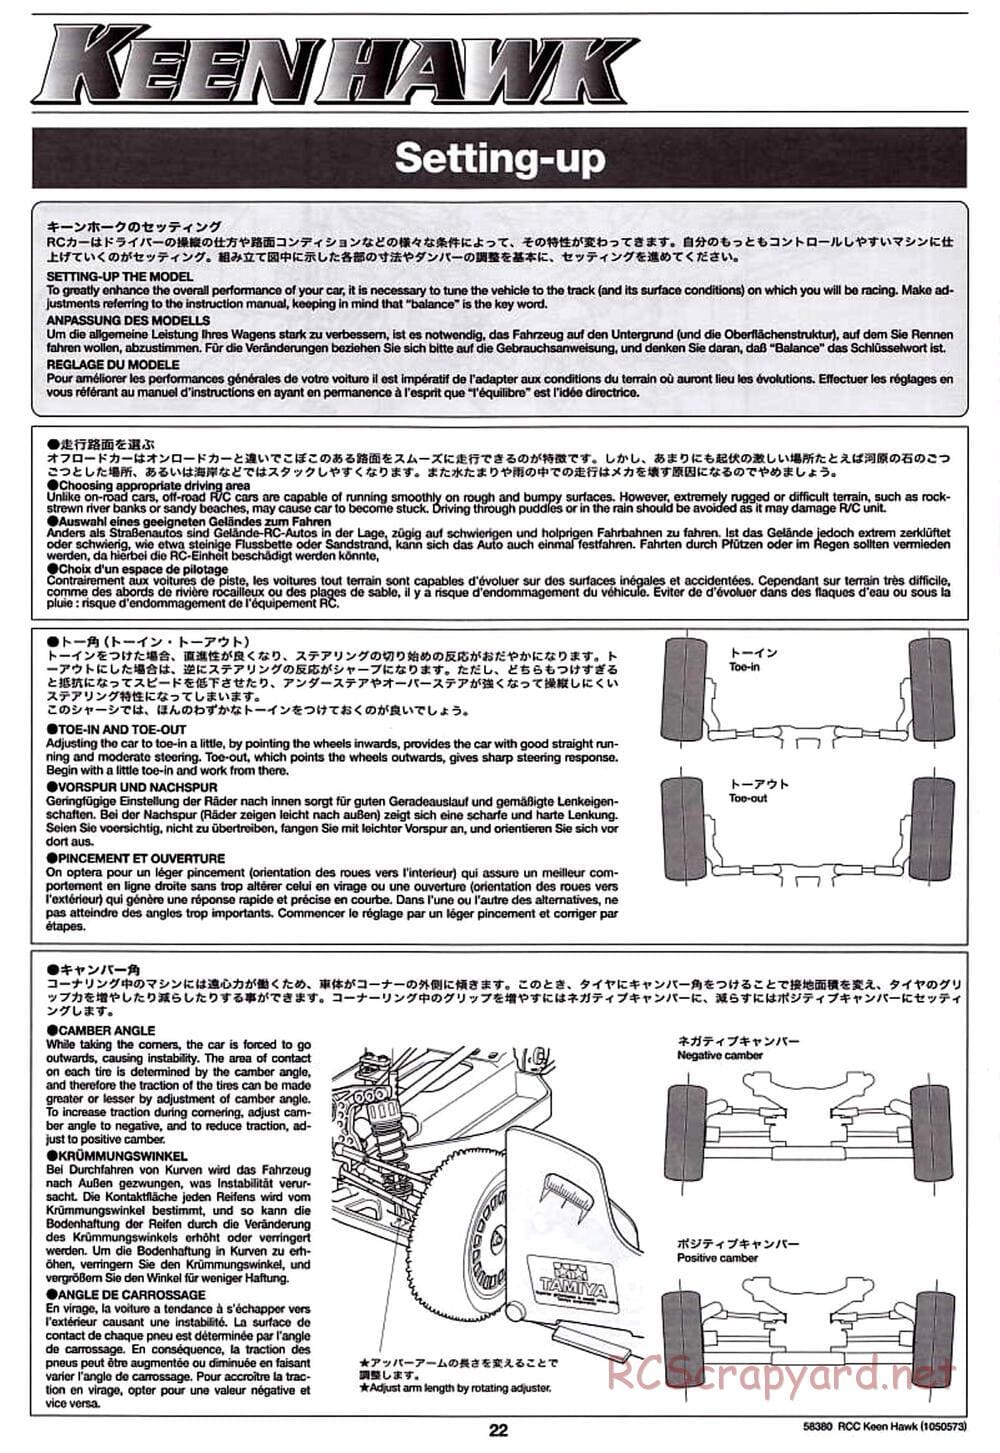 Tamiya - Keen Hawk Chassis - Manual - Page 22